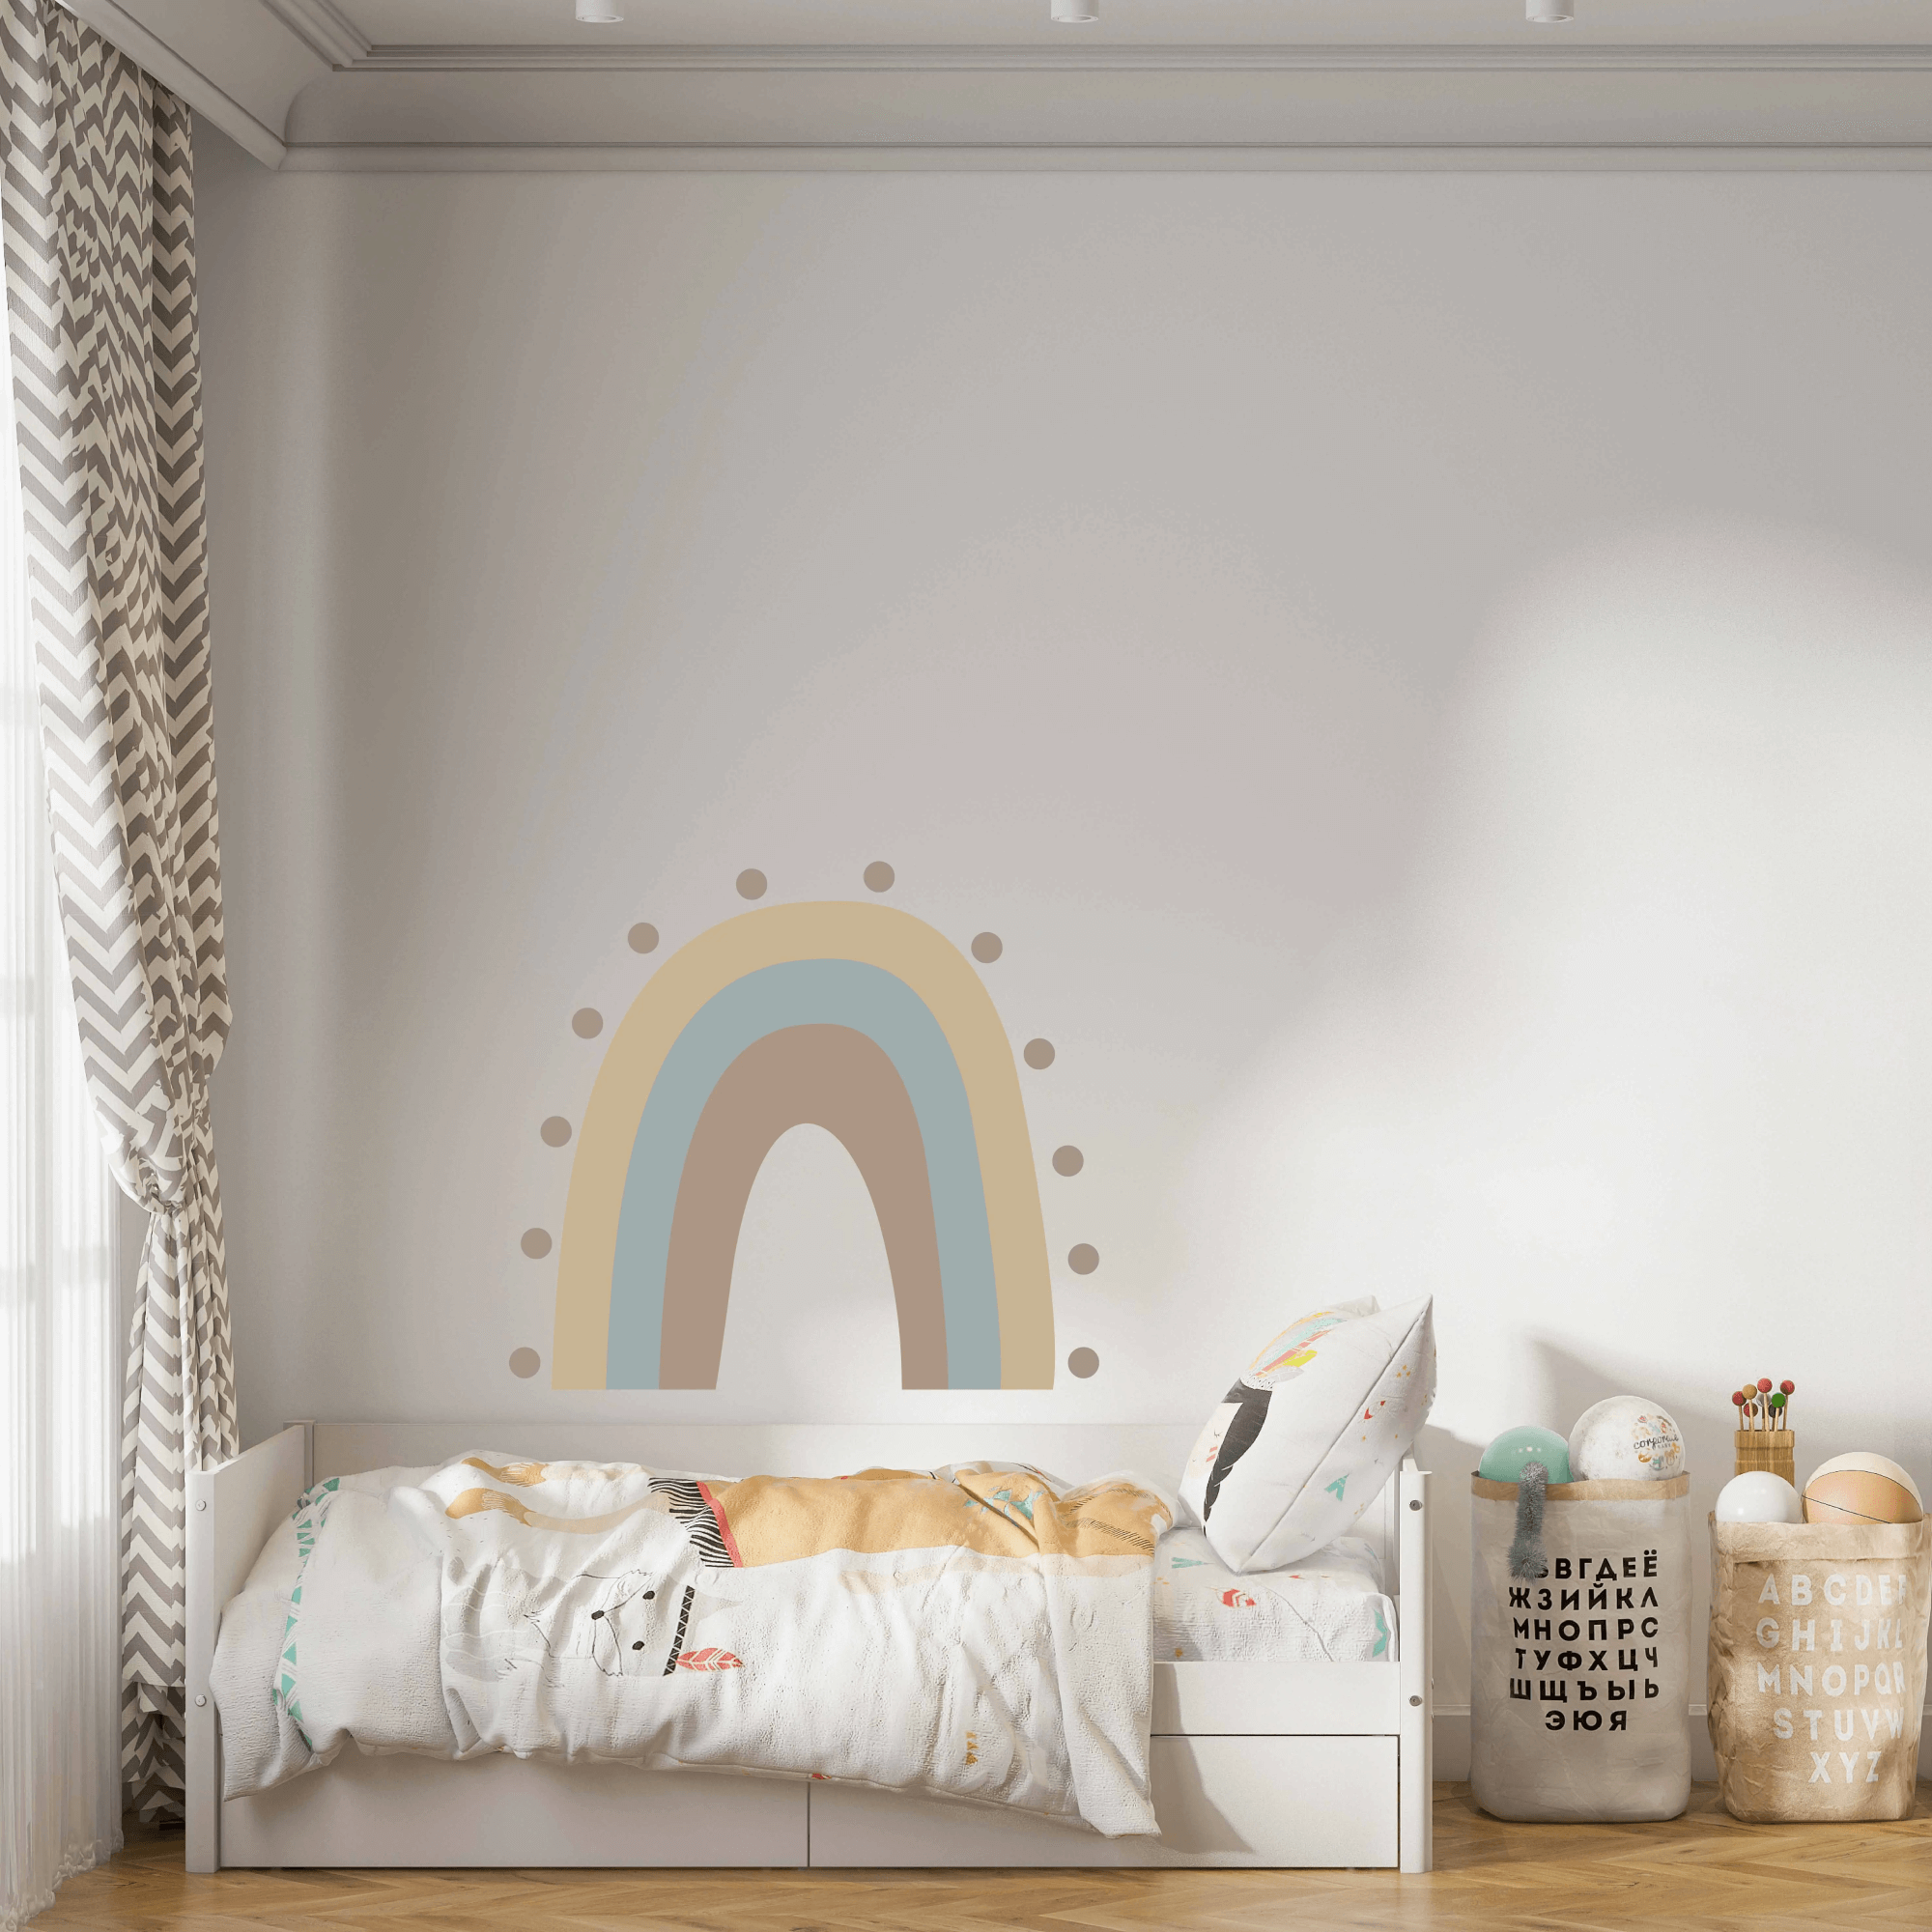 רכישת הציוד לחדר ילדים – כל פירטי העיצוב החדשים והמעניינים ביותר